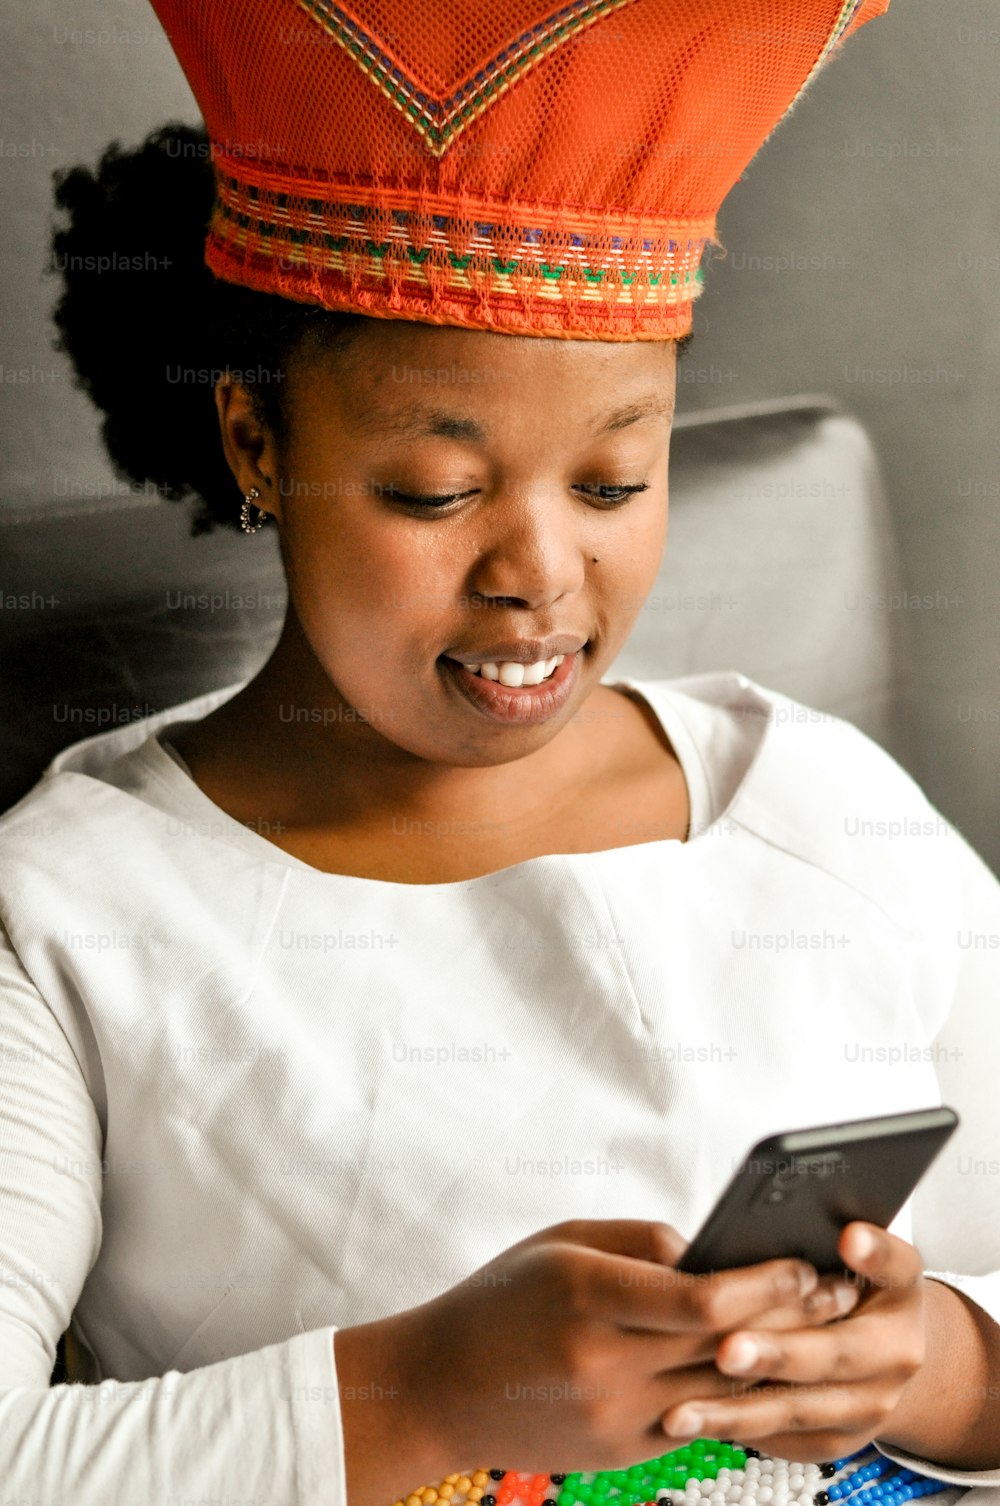 Una mujer con un sombrero rojo mirando un teléfono celular